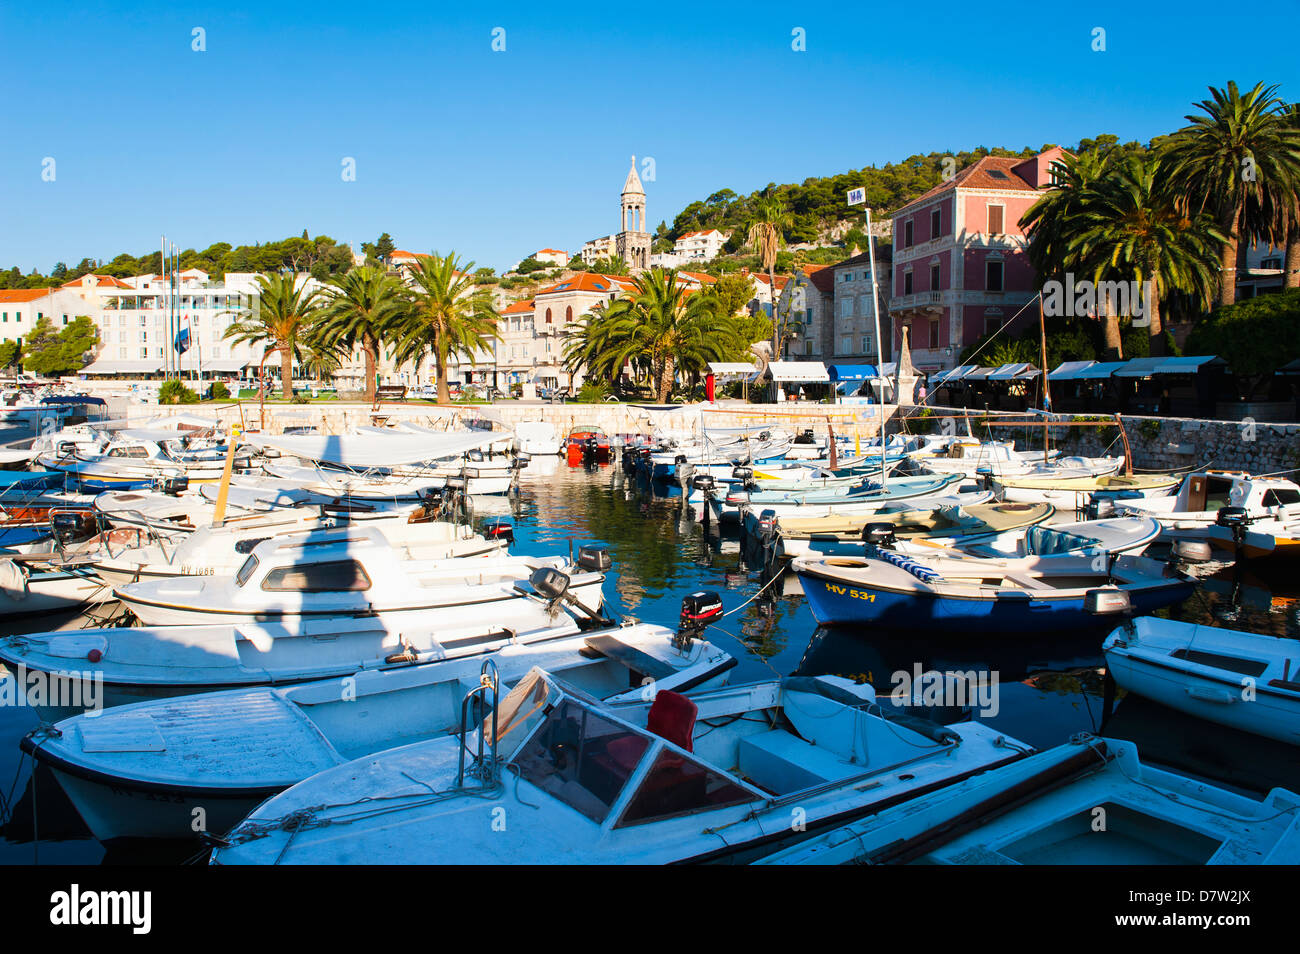 La città di Lesina centro, barche nel porto di Hvar e chiesa torre campanaria, Isola di Hvar costa dalmata, Adriatico, Croazia Foto Stock